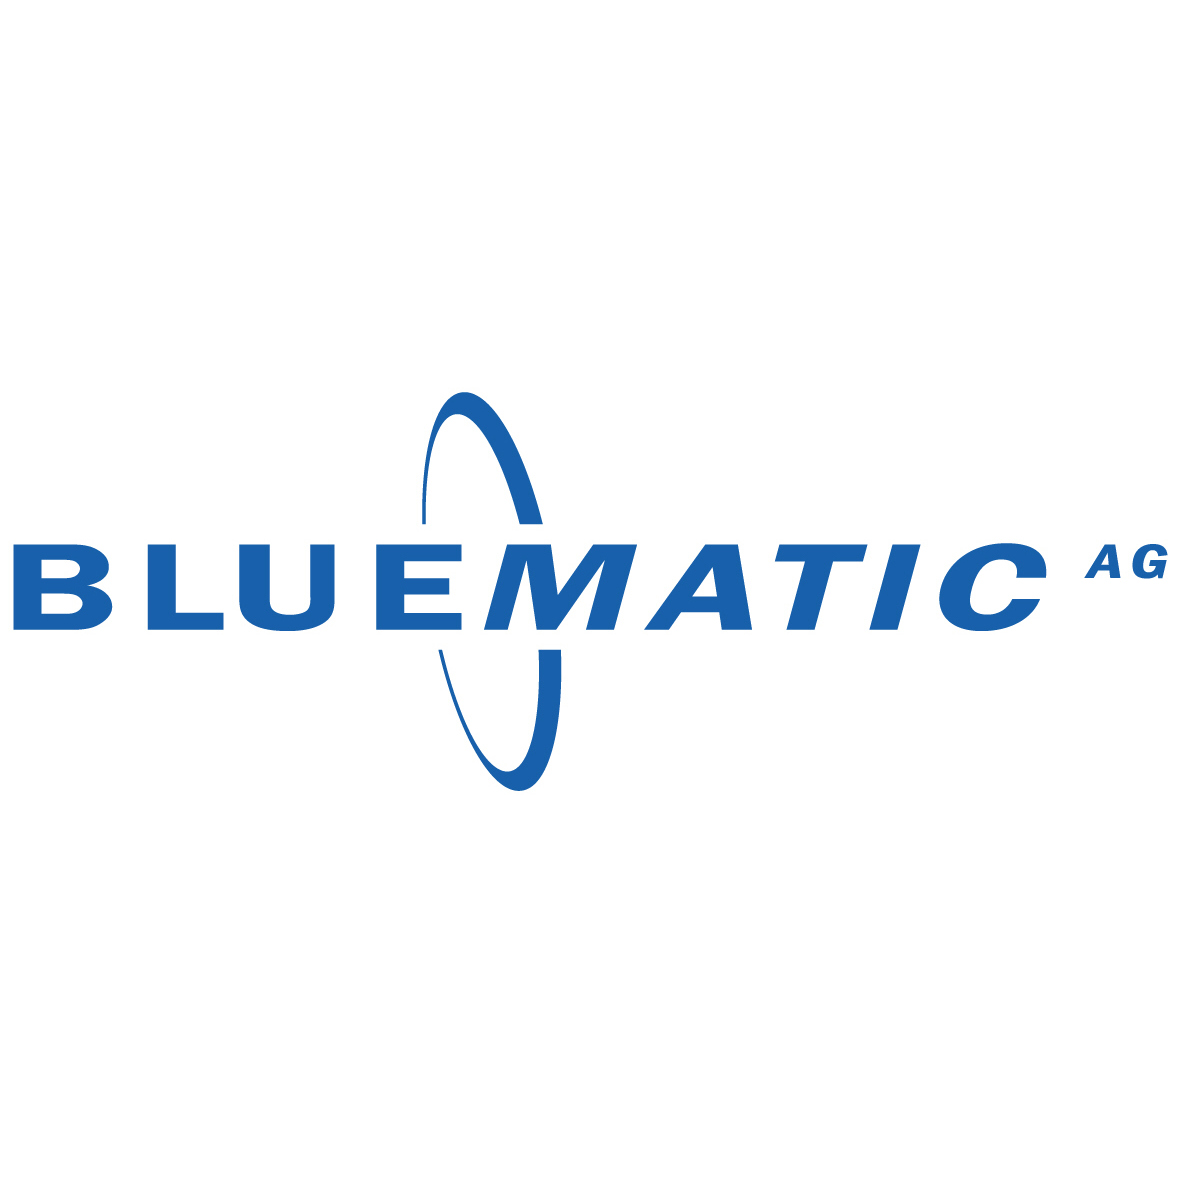 Bluematic AG Logo